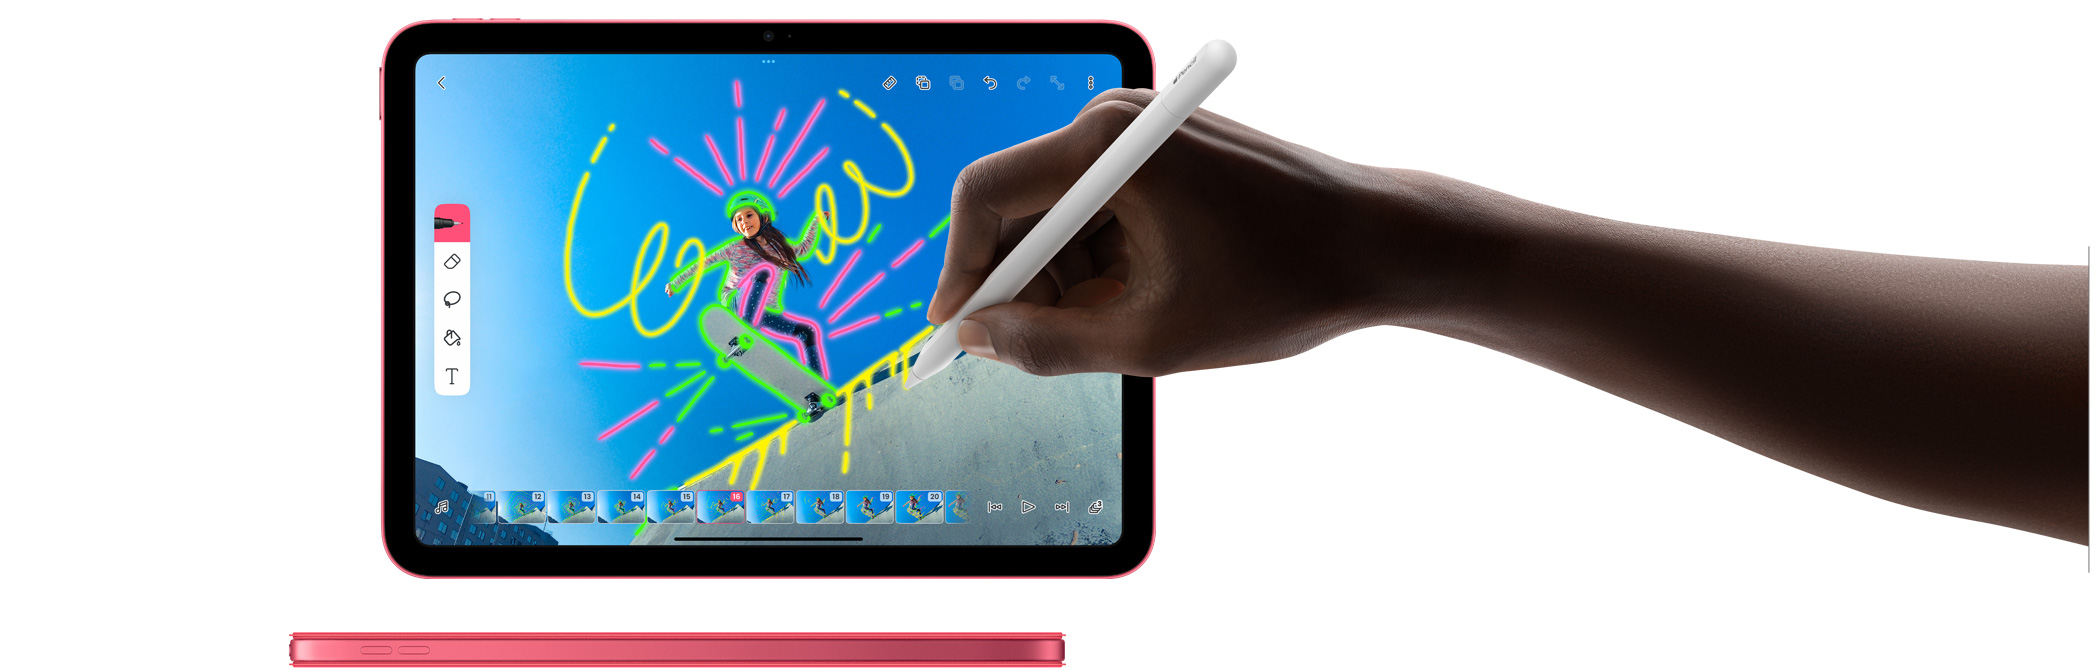 استخدام قلم Apple في تطبيق FlipaClip وصورة جانبية لجهاز iPad باللون الوردي مع غطاء لمحفظة ذكية بلون مطابق